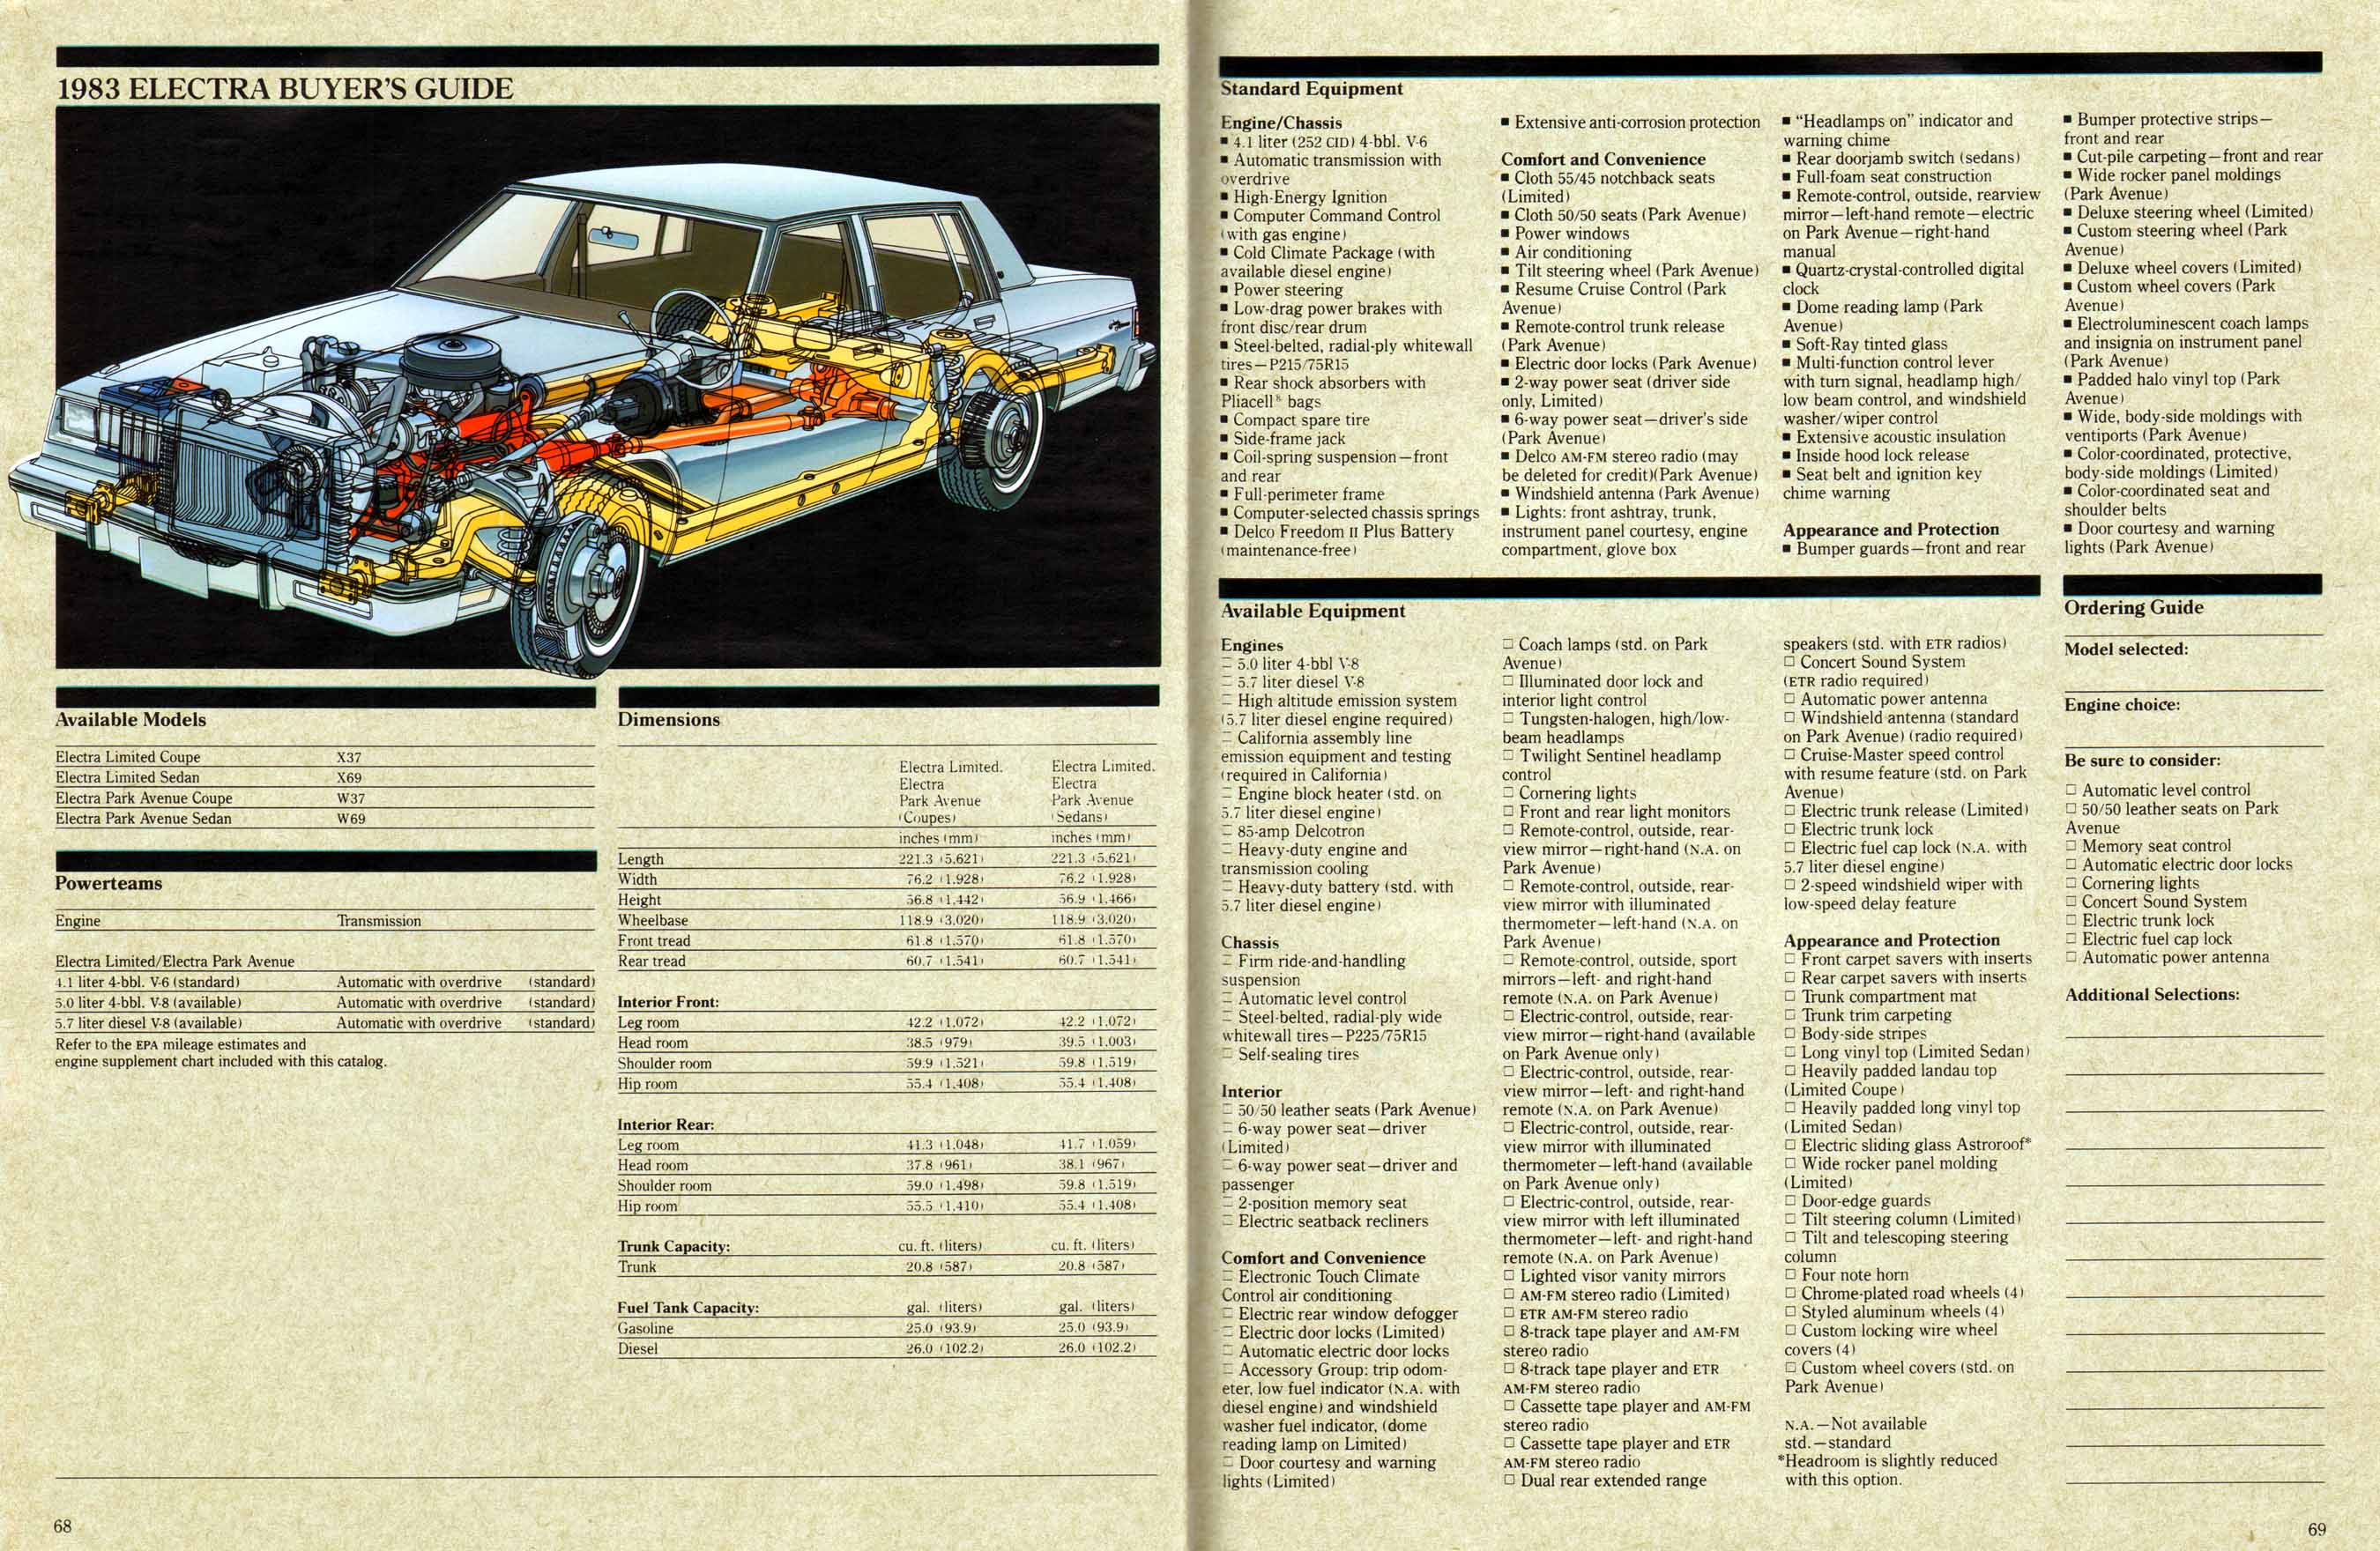 1983 Buick Full Line Prestige-68-69